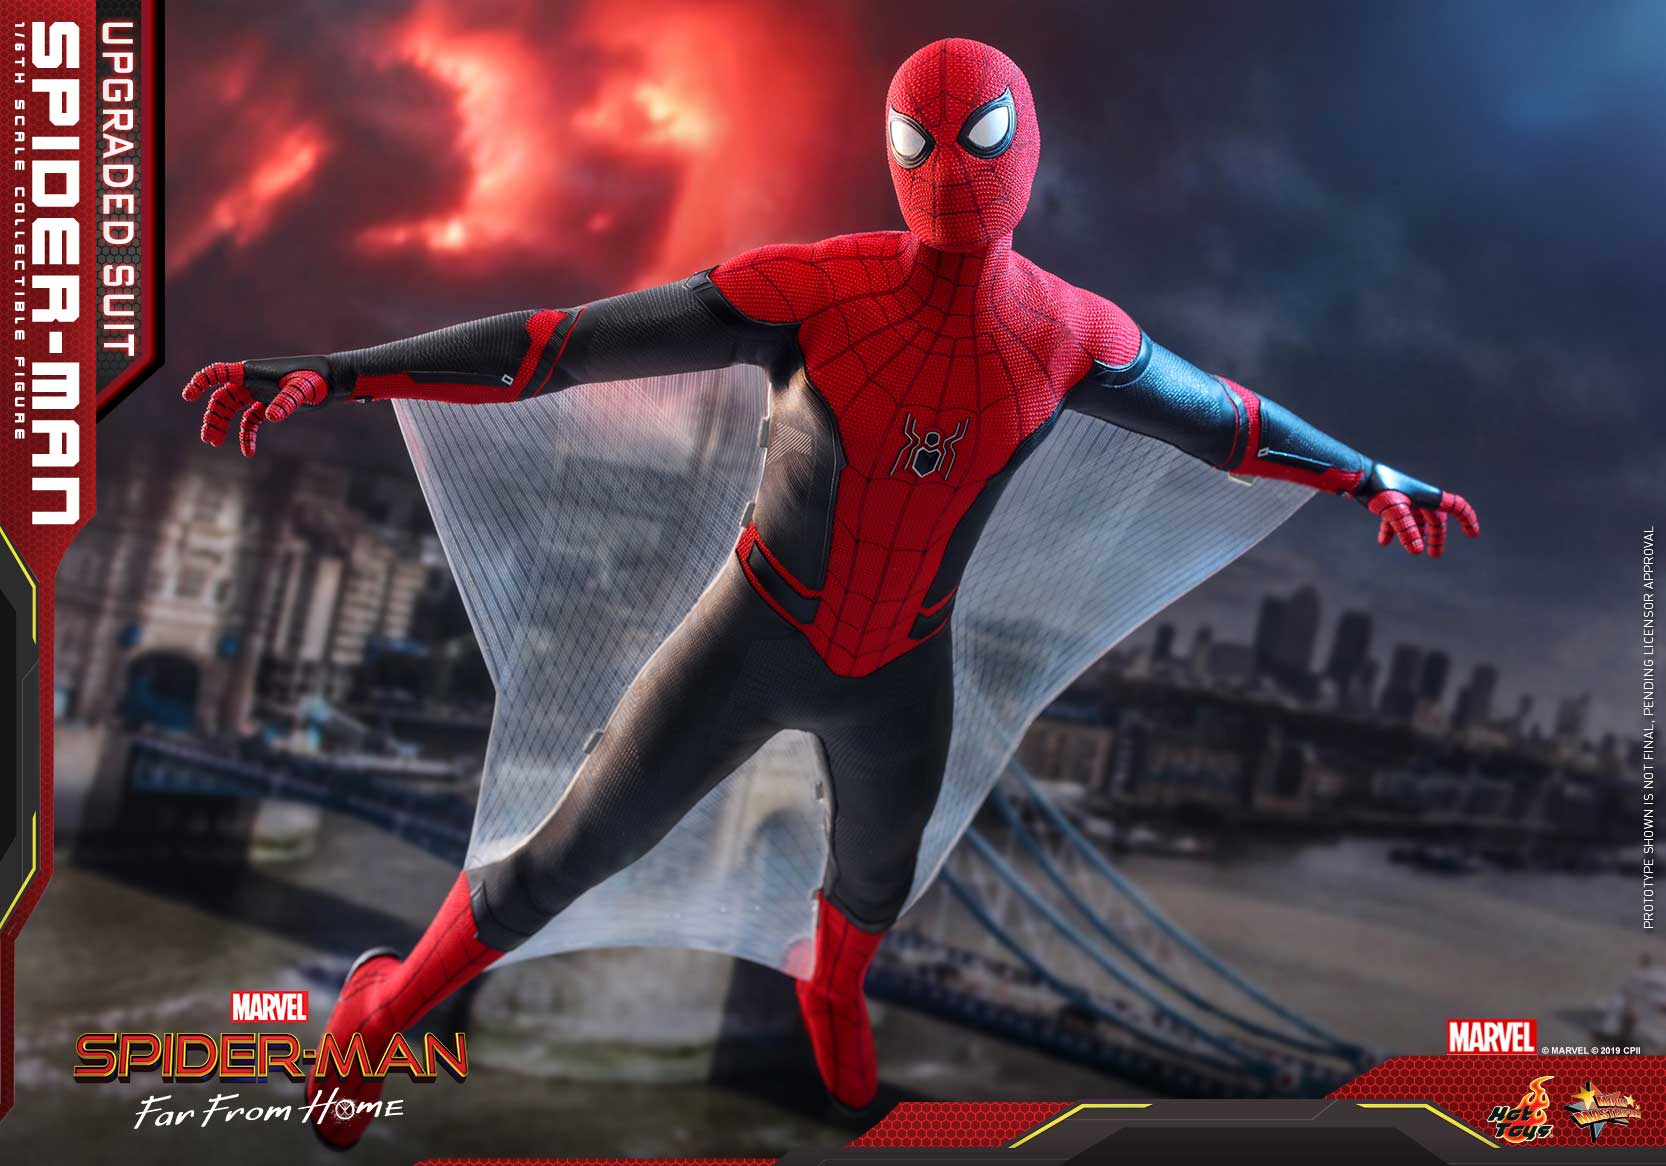 多套蜘蛛战衣先后登场,包括:《复仇者联盟 3:无限战争》的钢铁蜘蛛战